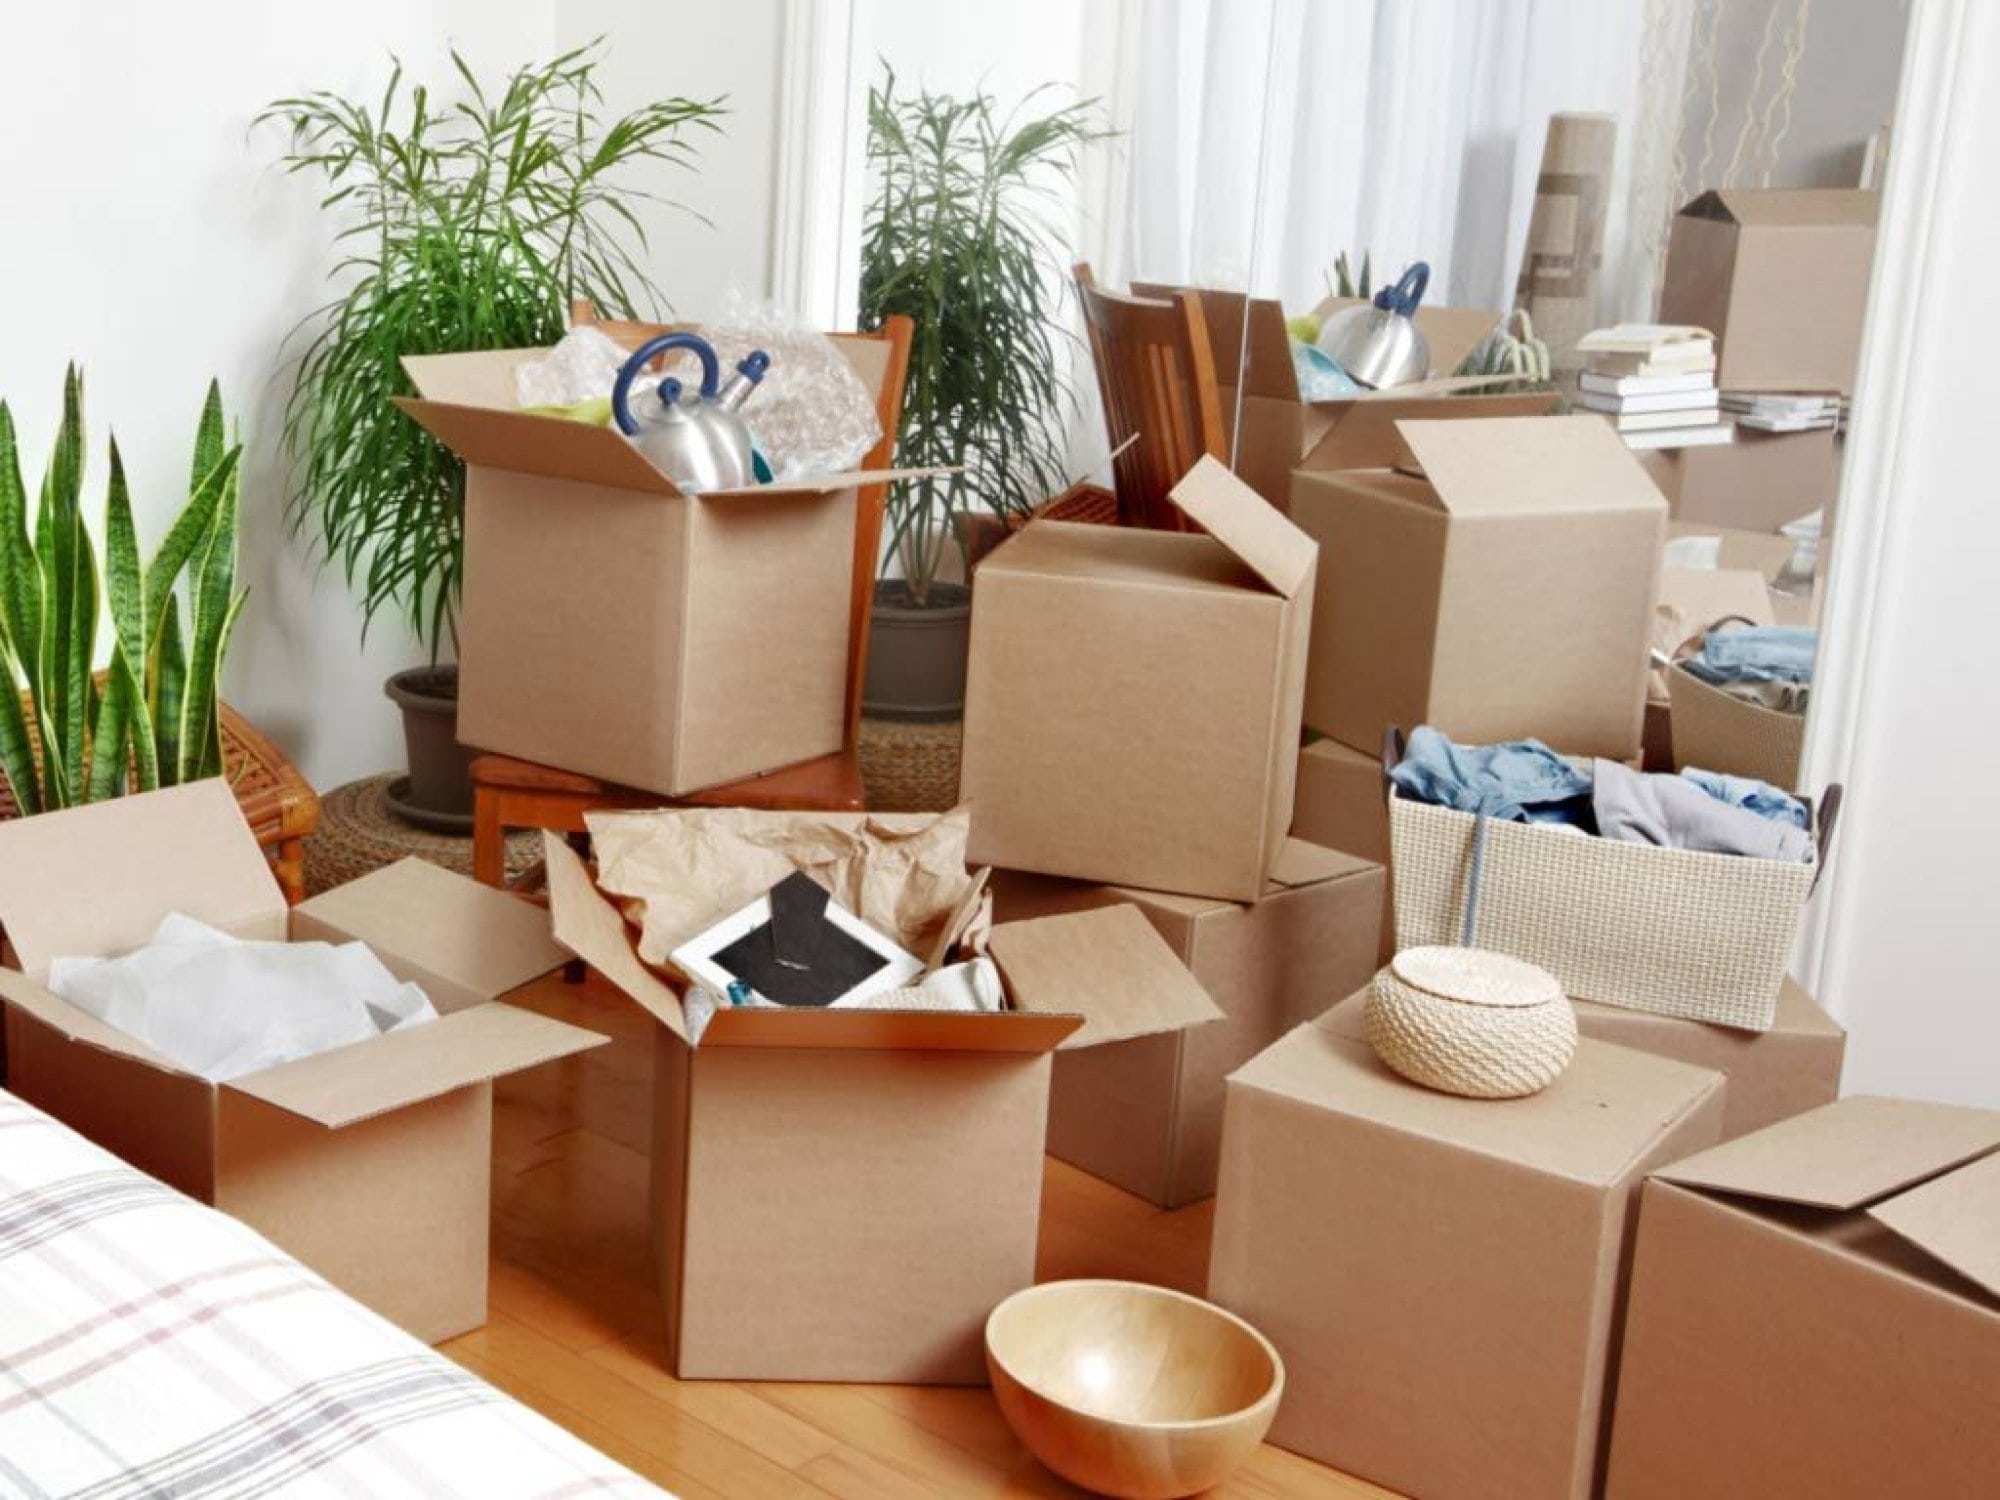 Сколько стоит квартирный переезд. Упаковка мебели. Коробки для упаковки вещей. Коробки в квартире. Упаковка вещей для переезда.